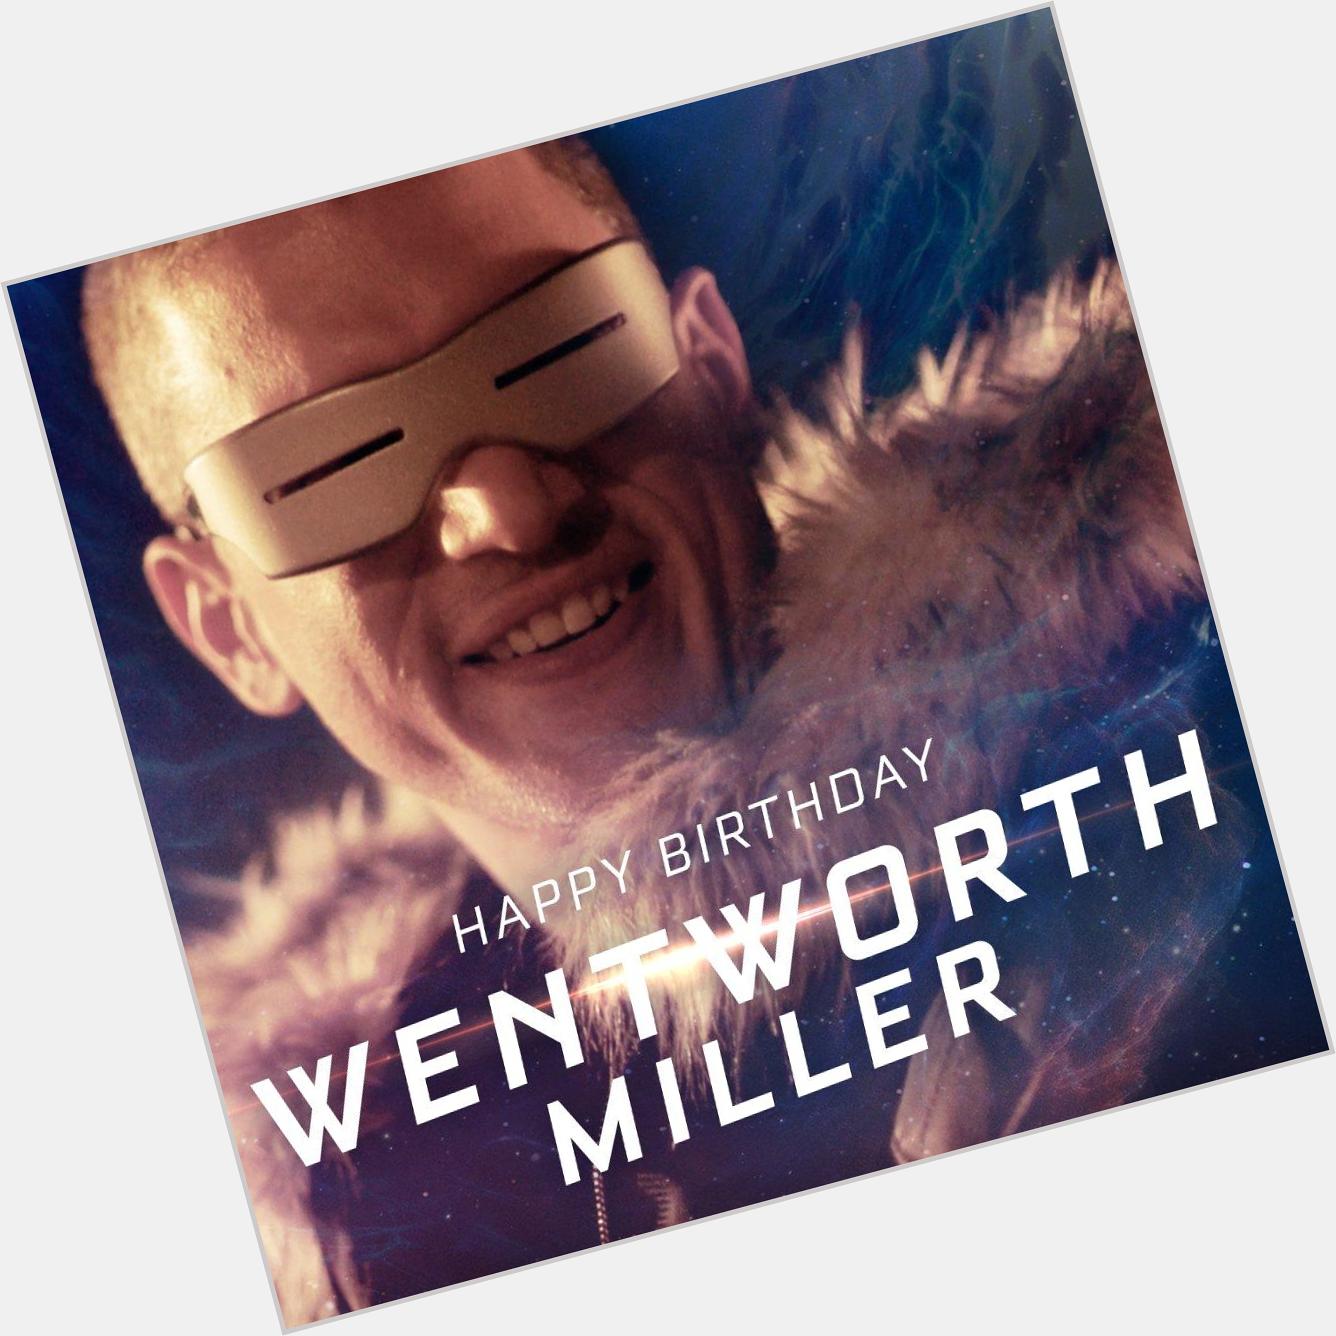  happy birthday Wentworth miller  